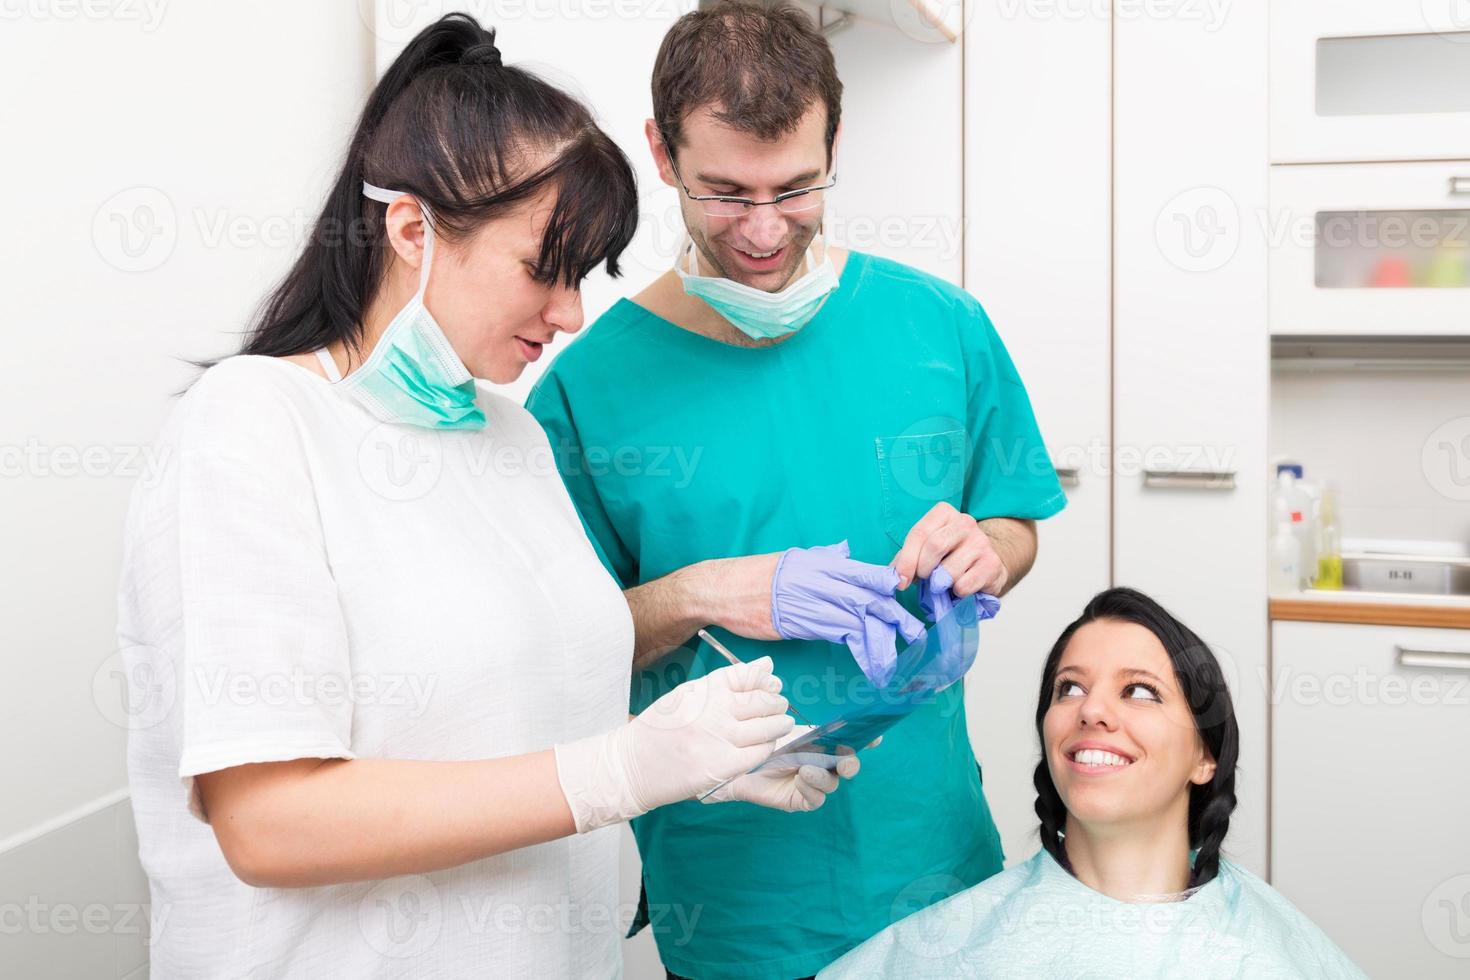 consultas del dentista sobre imagen de rayos x foto